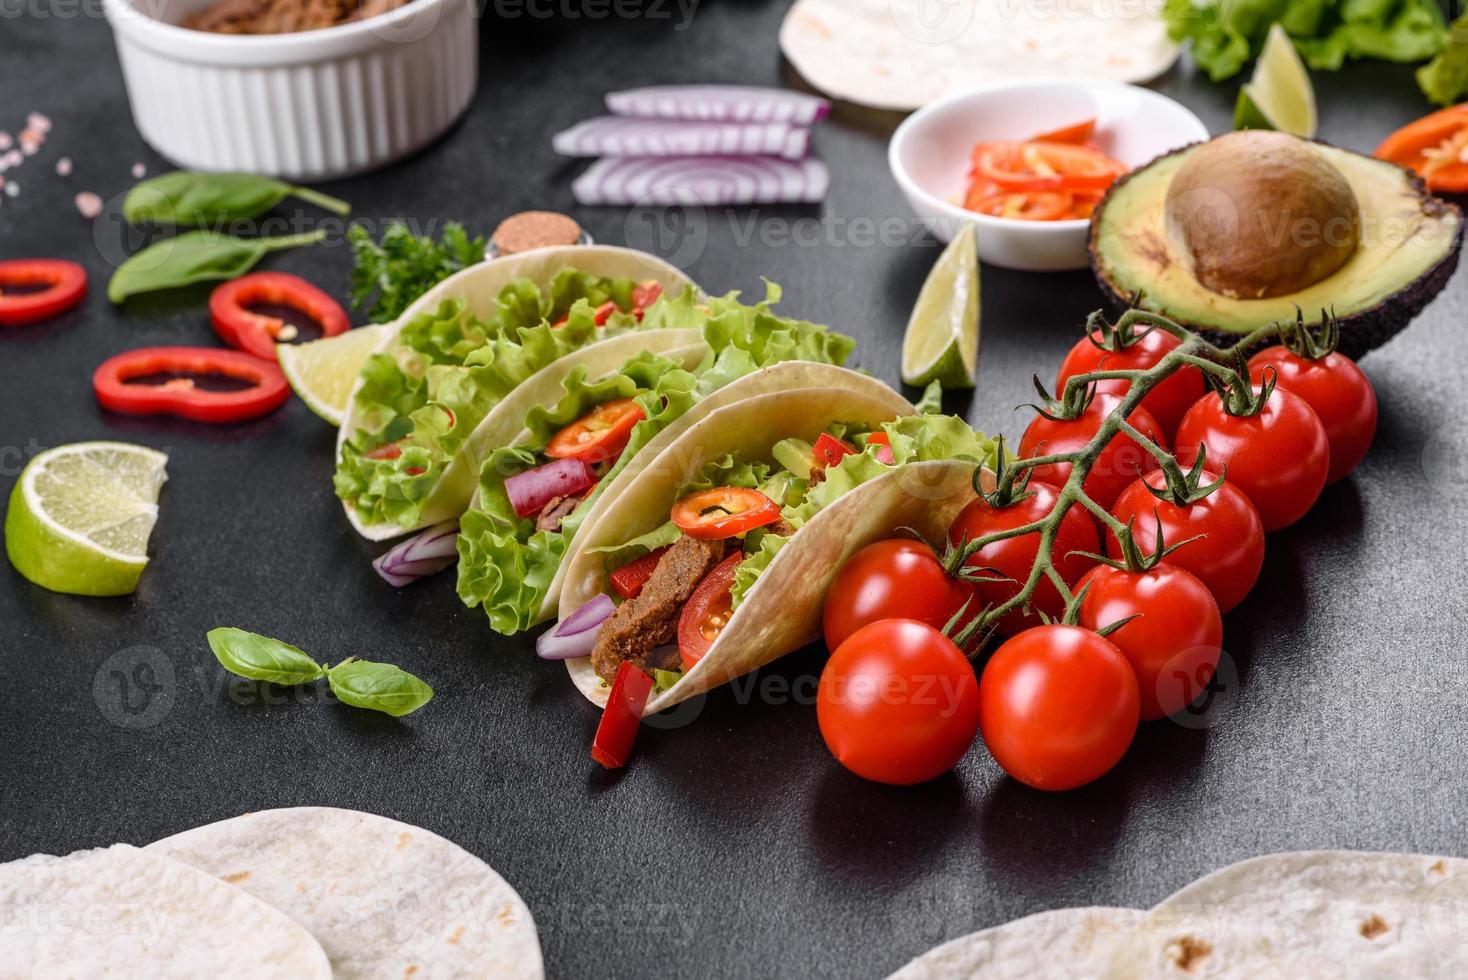 tacos mexicanos con carne, tomate, aguacate, cebolla y salsa salsa foto